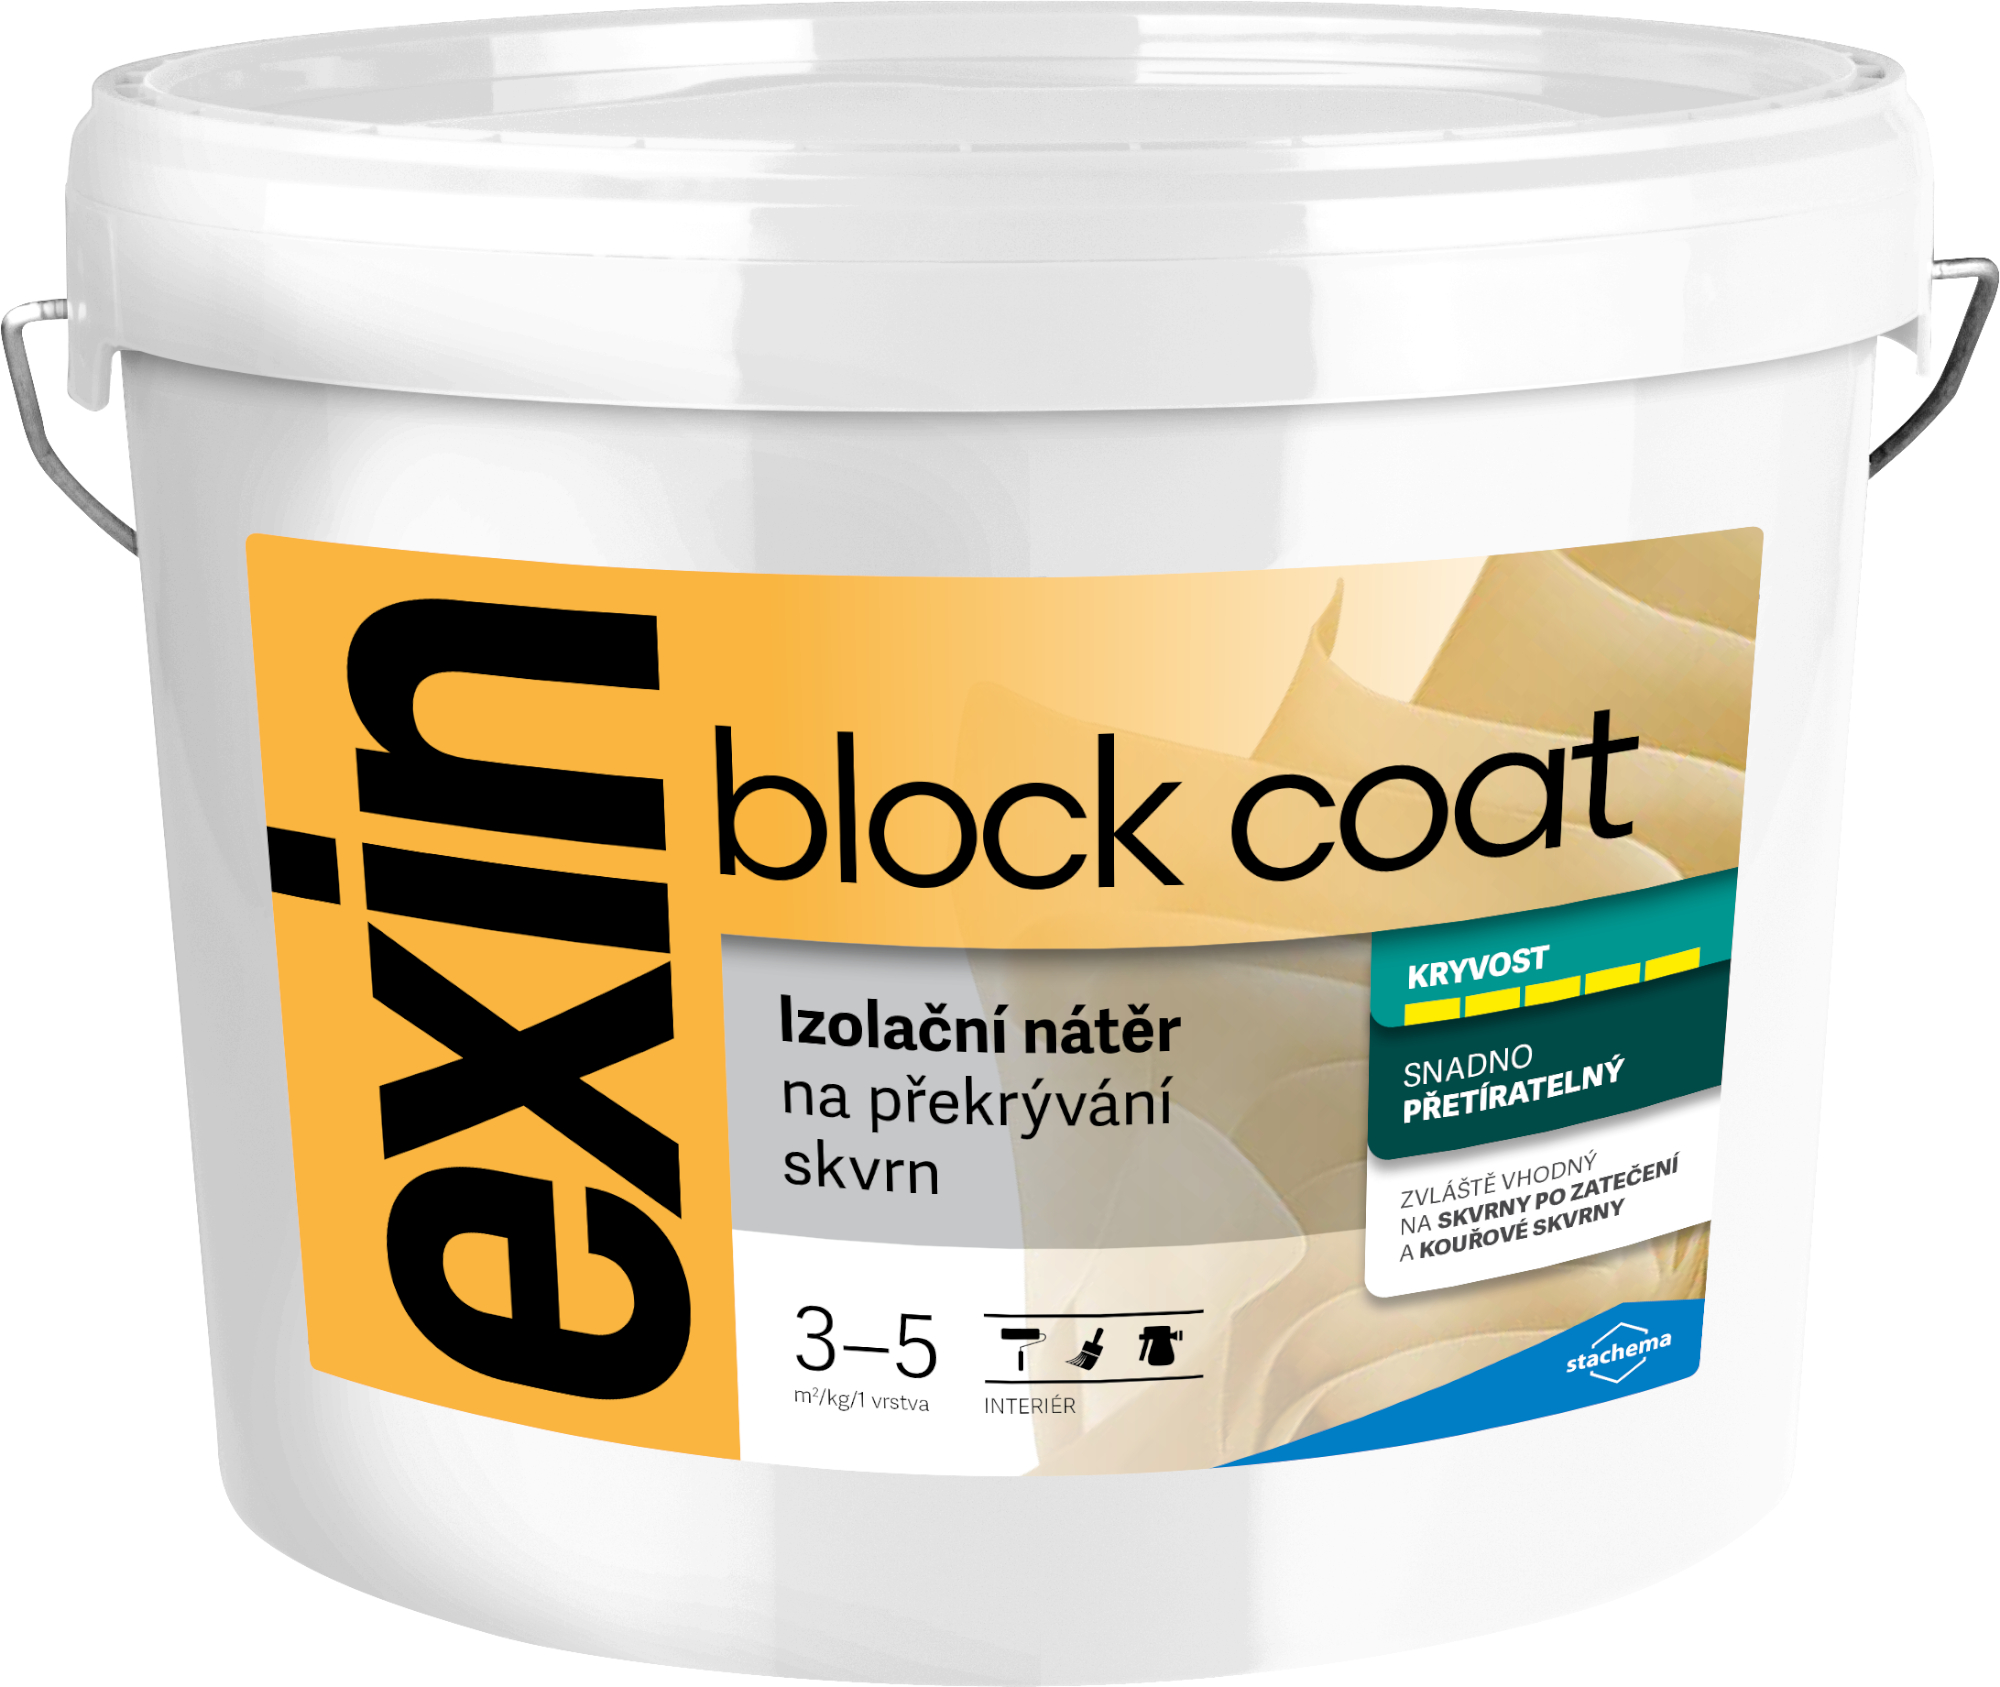 Nátěr k zakrývání skvrn Stachema Exin Block Coat bílá, 1 kg